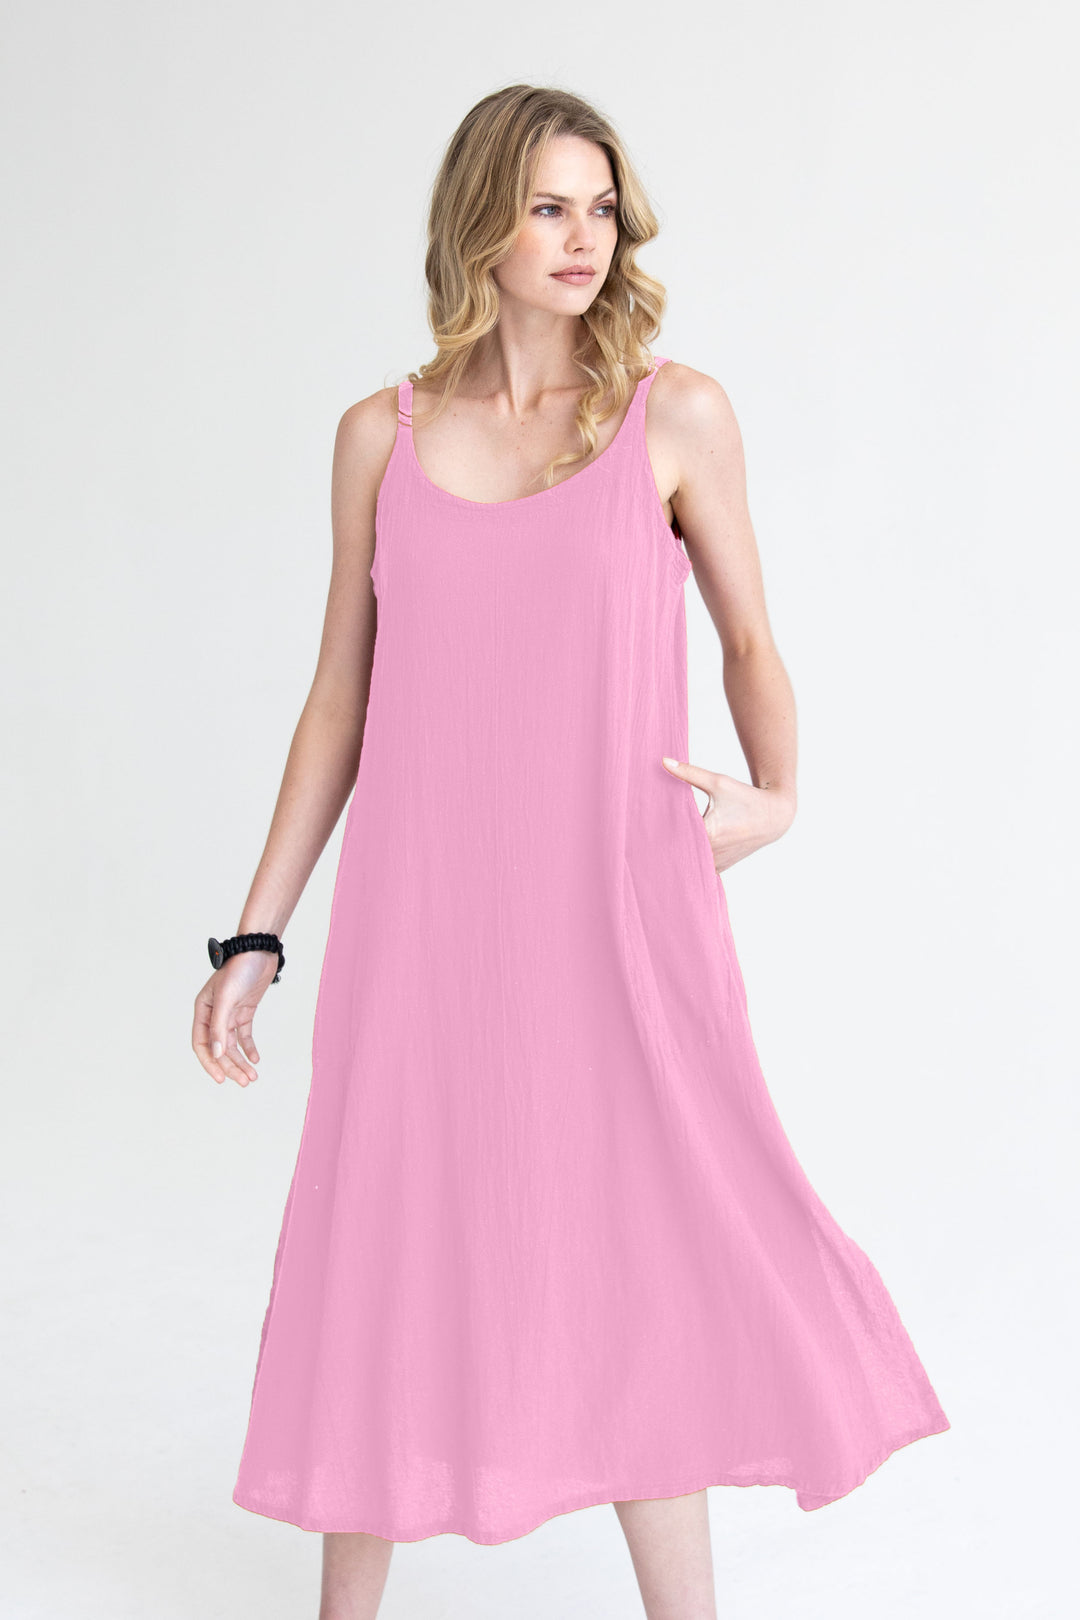 Onelife D660 Figi Fondant Pink Cotton A-Line Dress - Experience Boutique